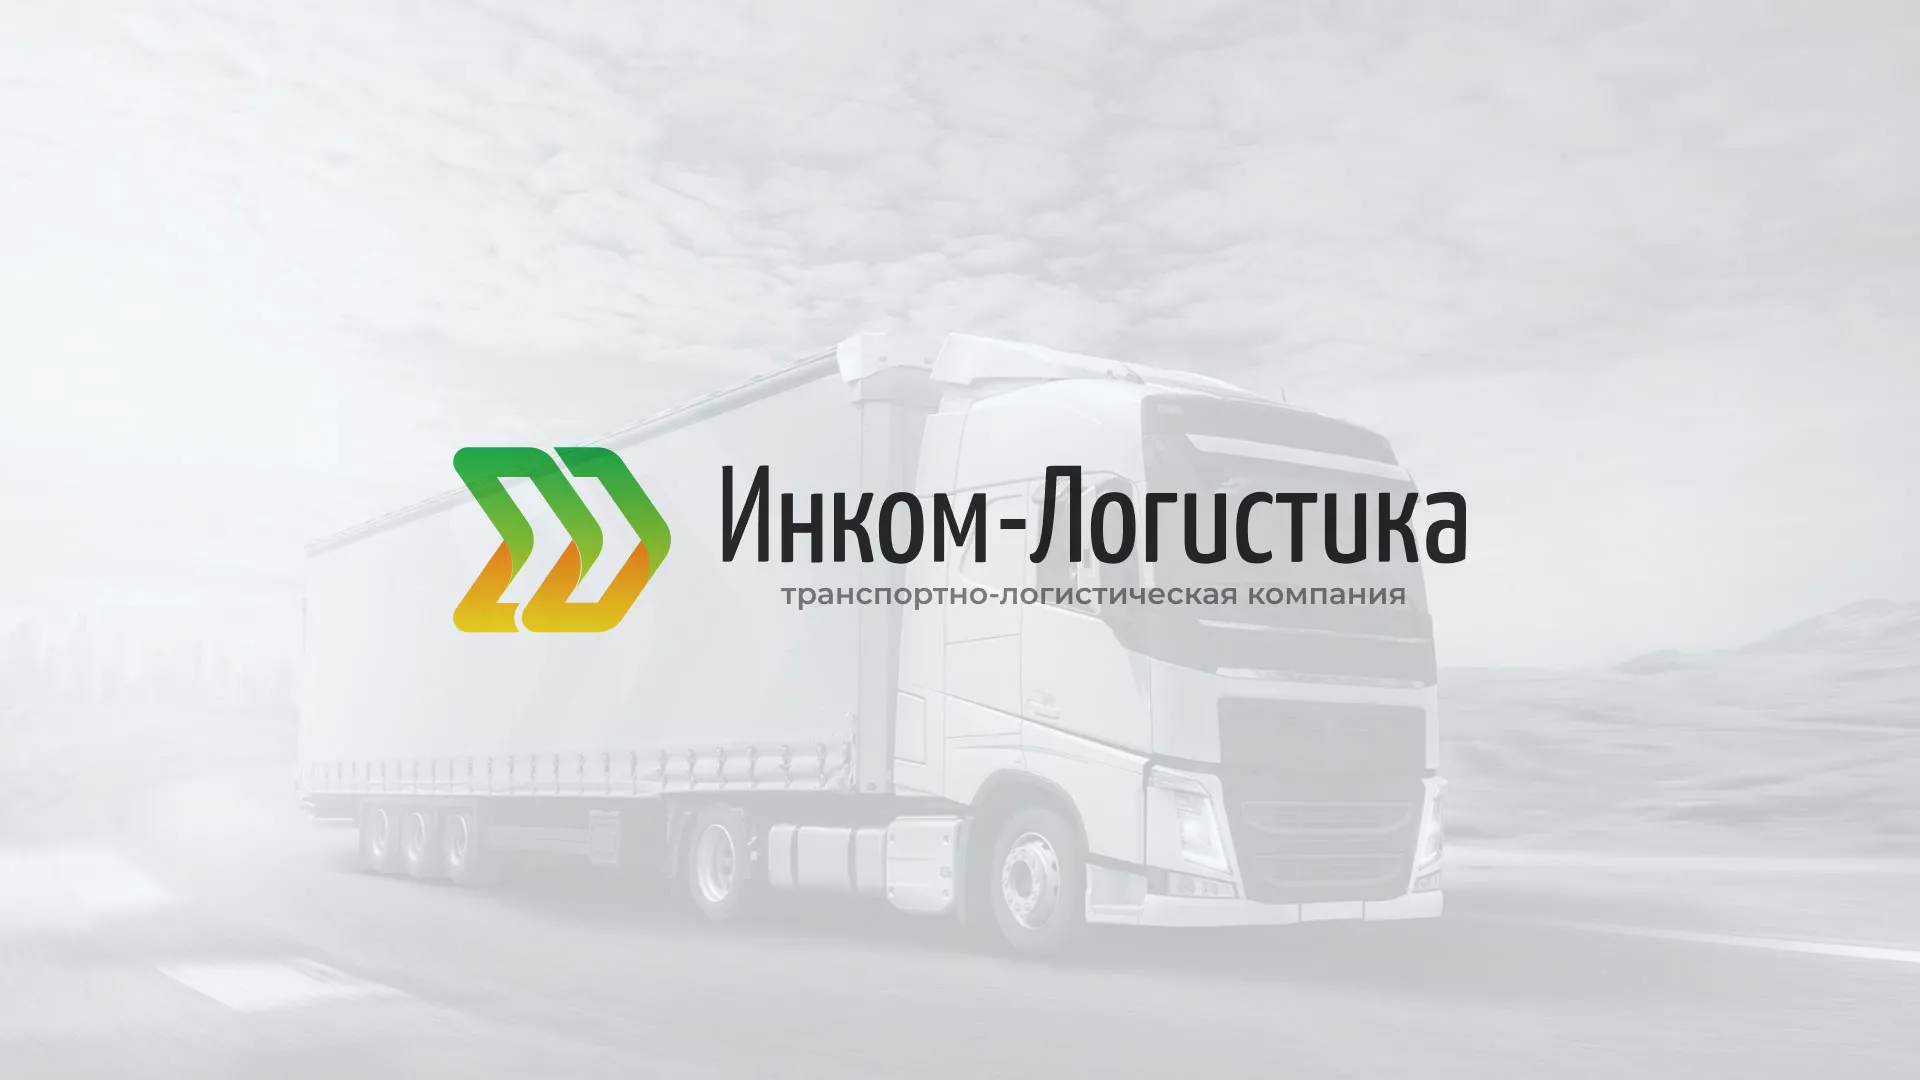 Разработка логотипа и сайта компании «Инком-Логистика» в Бежецке